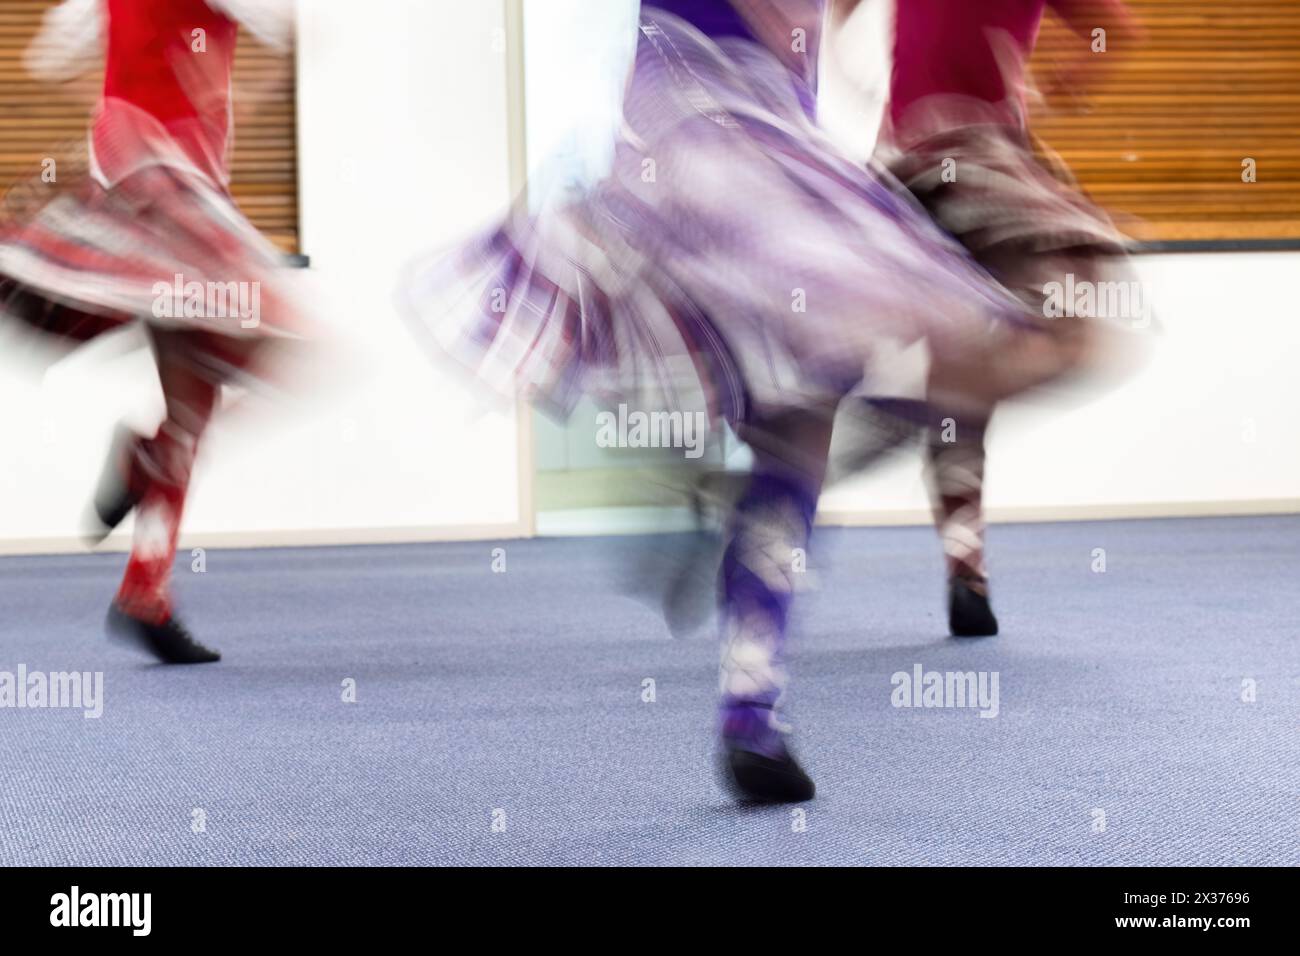 Junge Mädchen, die in einem Tanzclub tanzen. Bewegungsunschärfe von schönen fliegenden Röcken, die in der Kamera mit langsamer Verschlusszeit aufgenommen wurden. Stockfoto